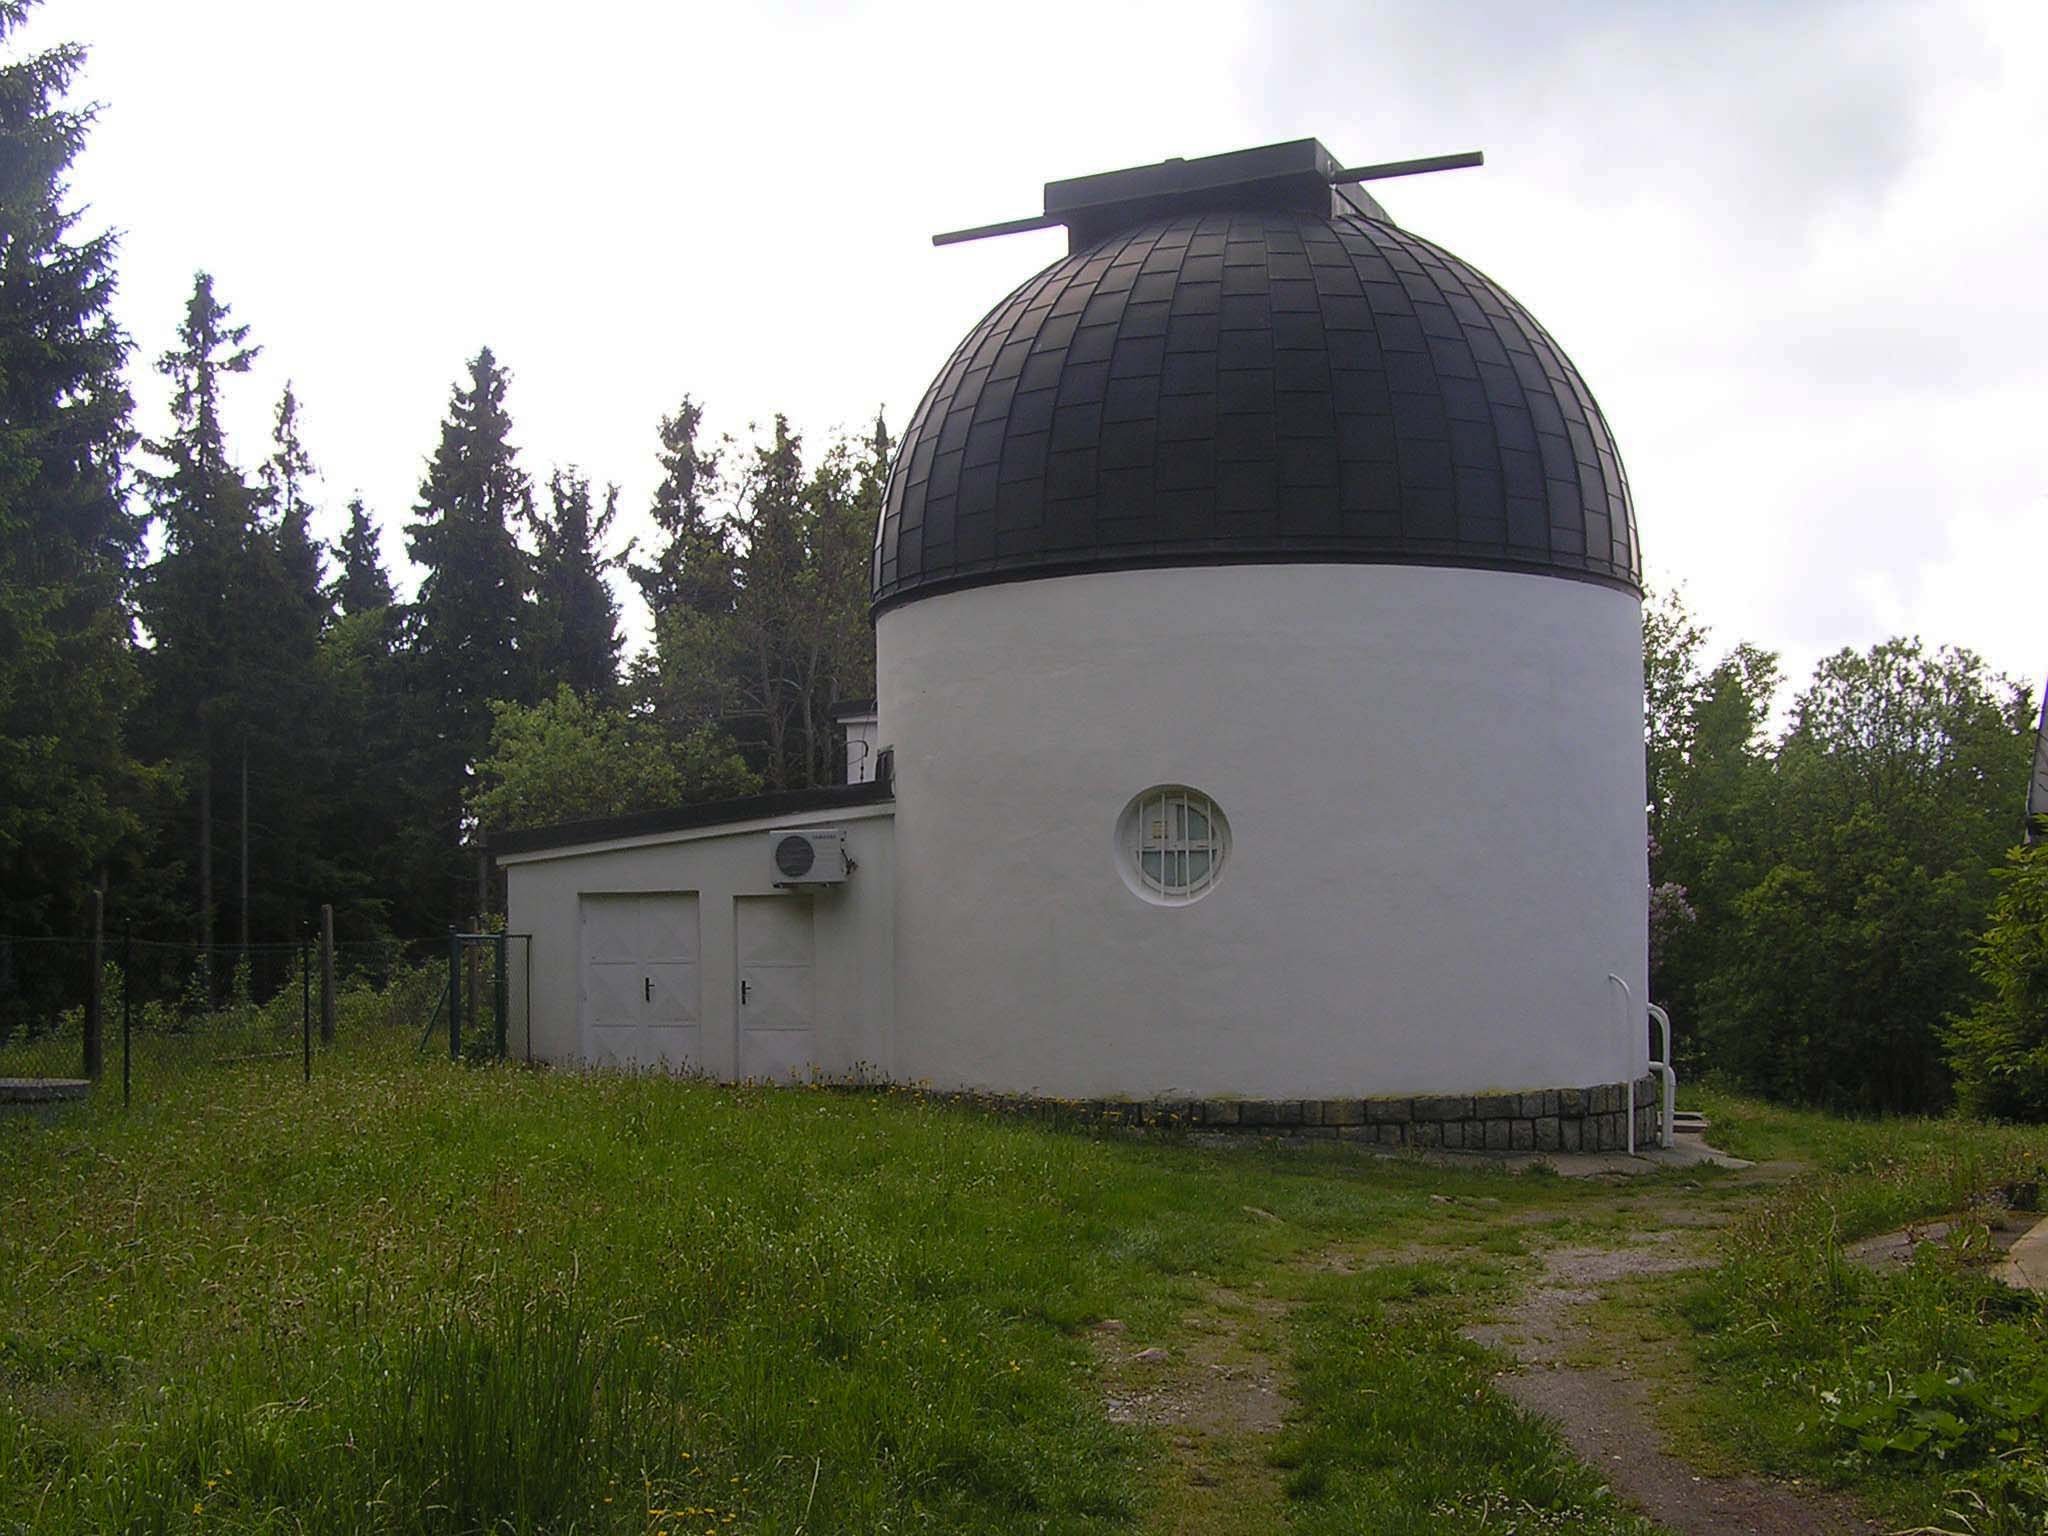 Observatorium van Pilsen